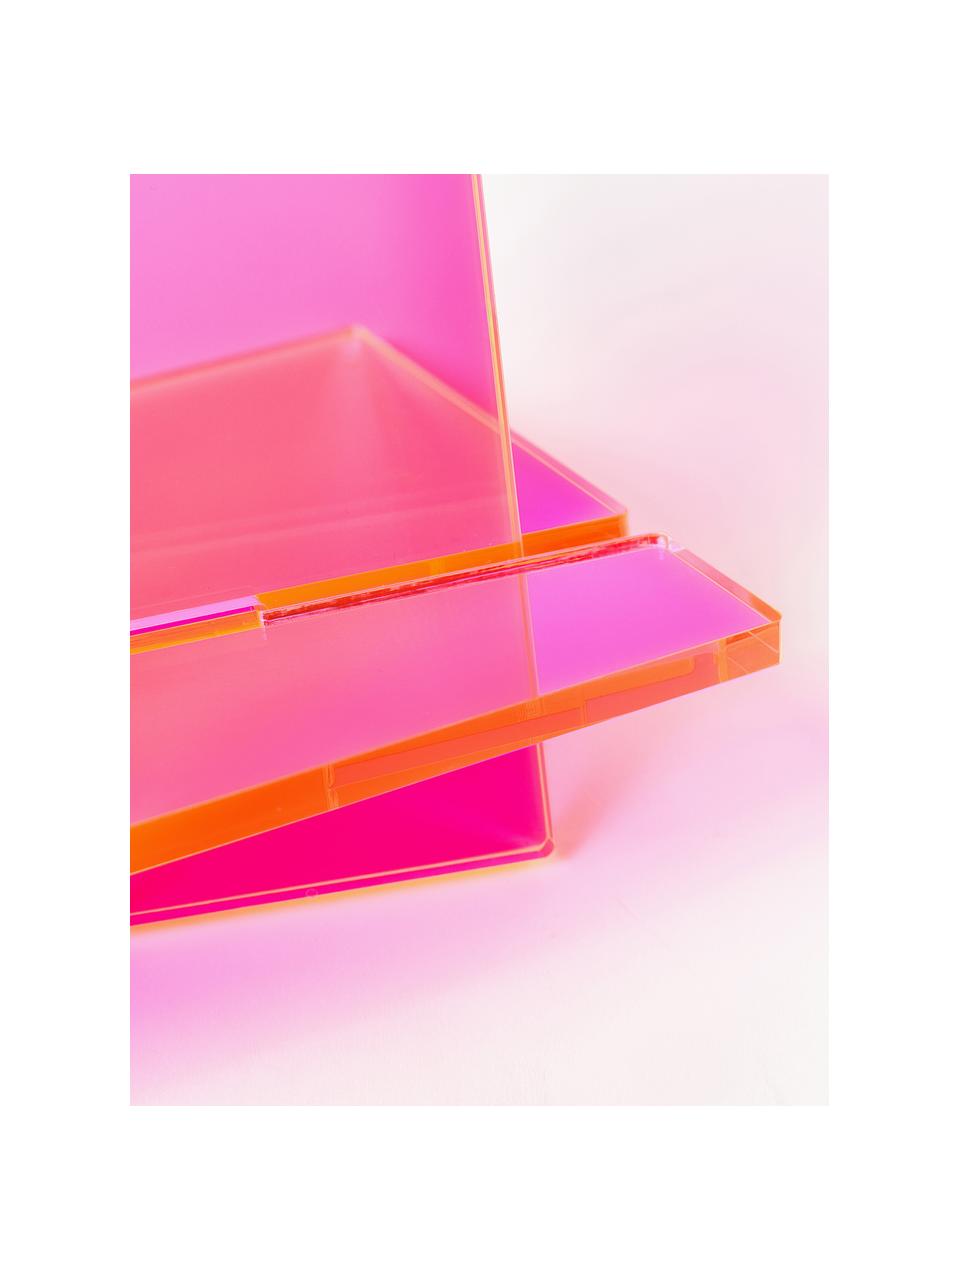 Stojak na książki Crystal, S 36 x W 34 cm, Szkło akrylowe, Różowy, półtransparentny, S 36 x W 34 cm